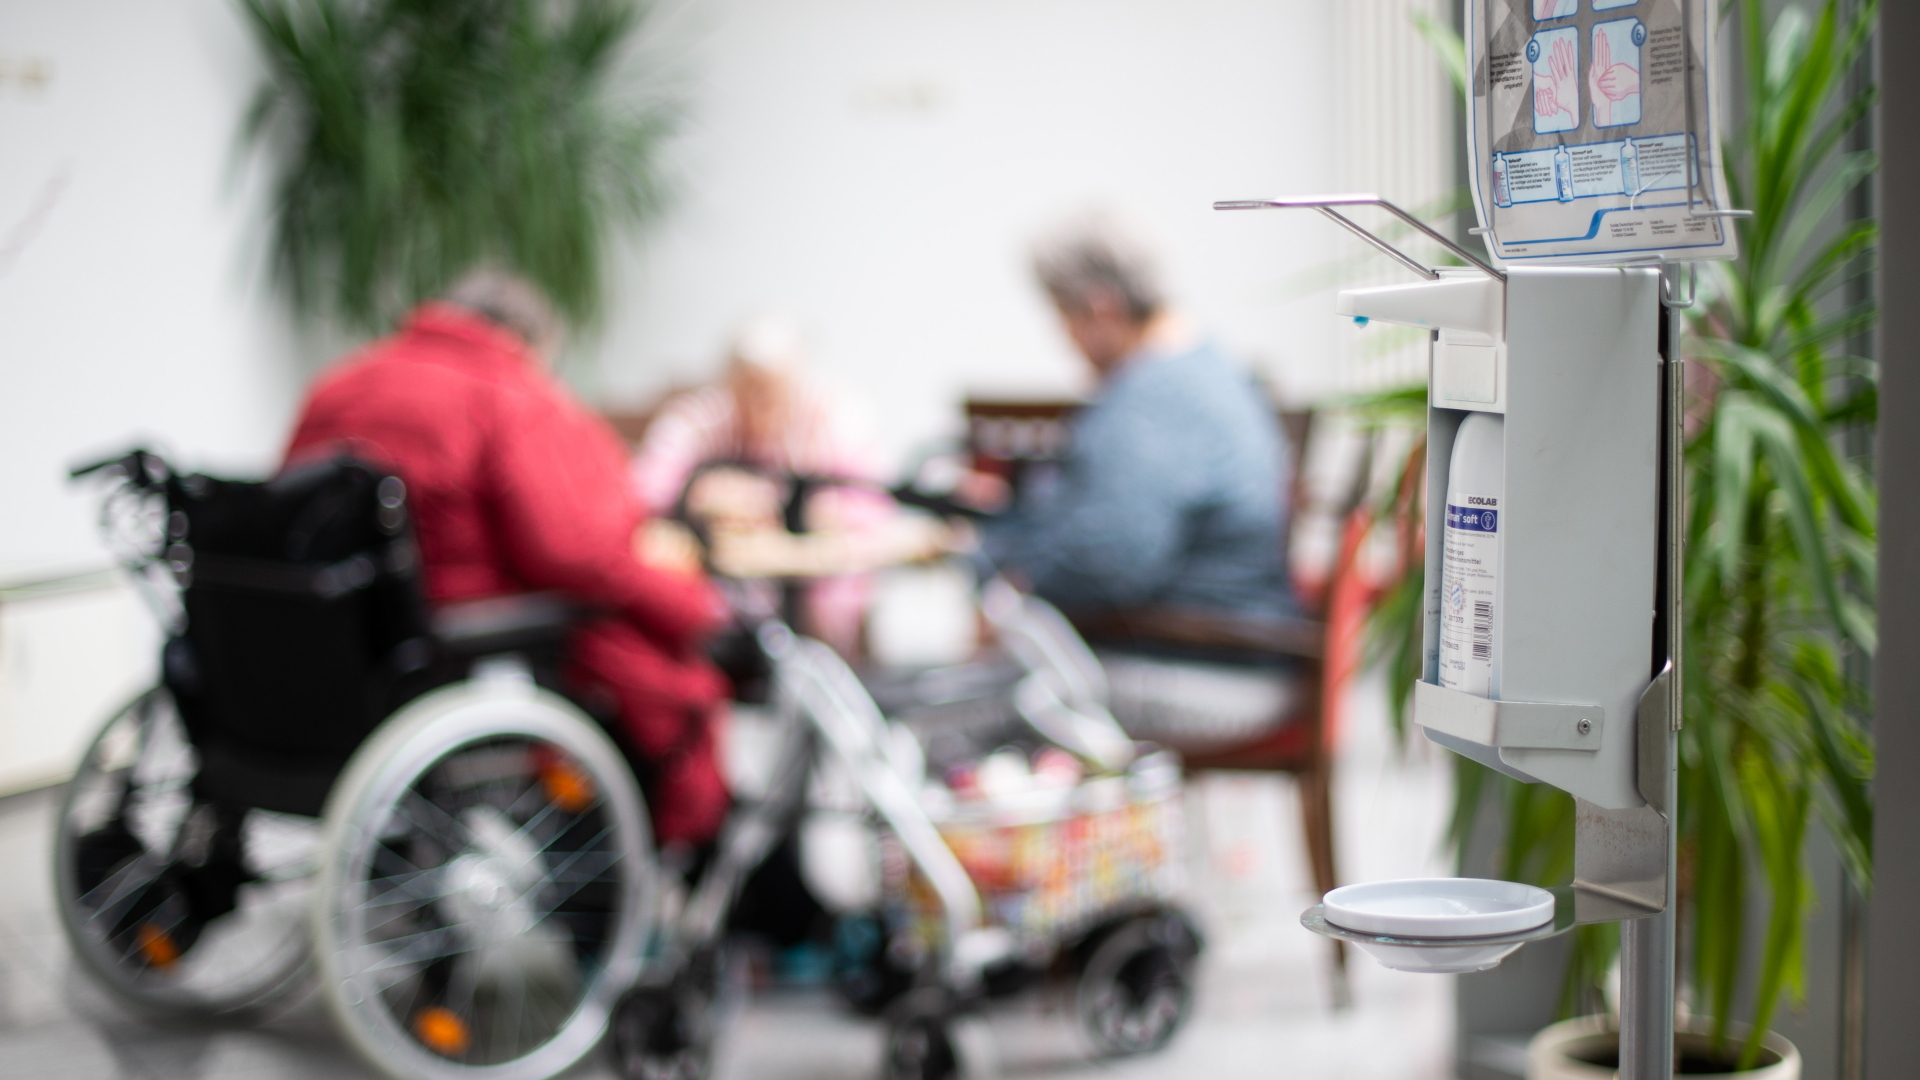 Nordrhein-Westfalen, Heinsberg: Ein Desinfektionsmittelspender hängt im Johannes-Sondermann-Haus des AWO Altenzentrums während im Hintergrund Seniorinnen spielen. | dpa